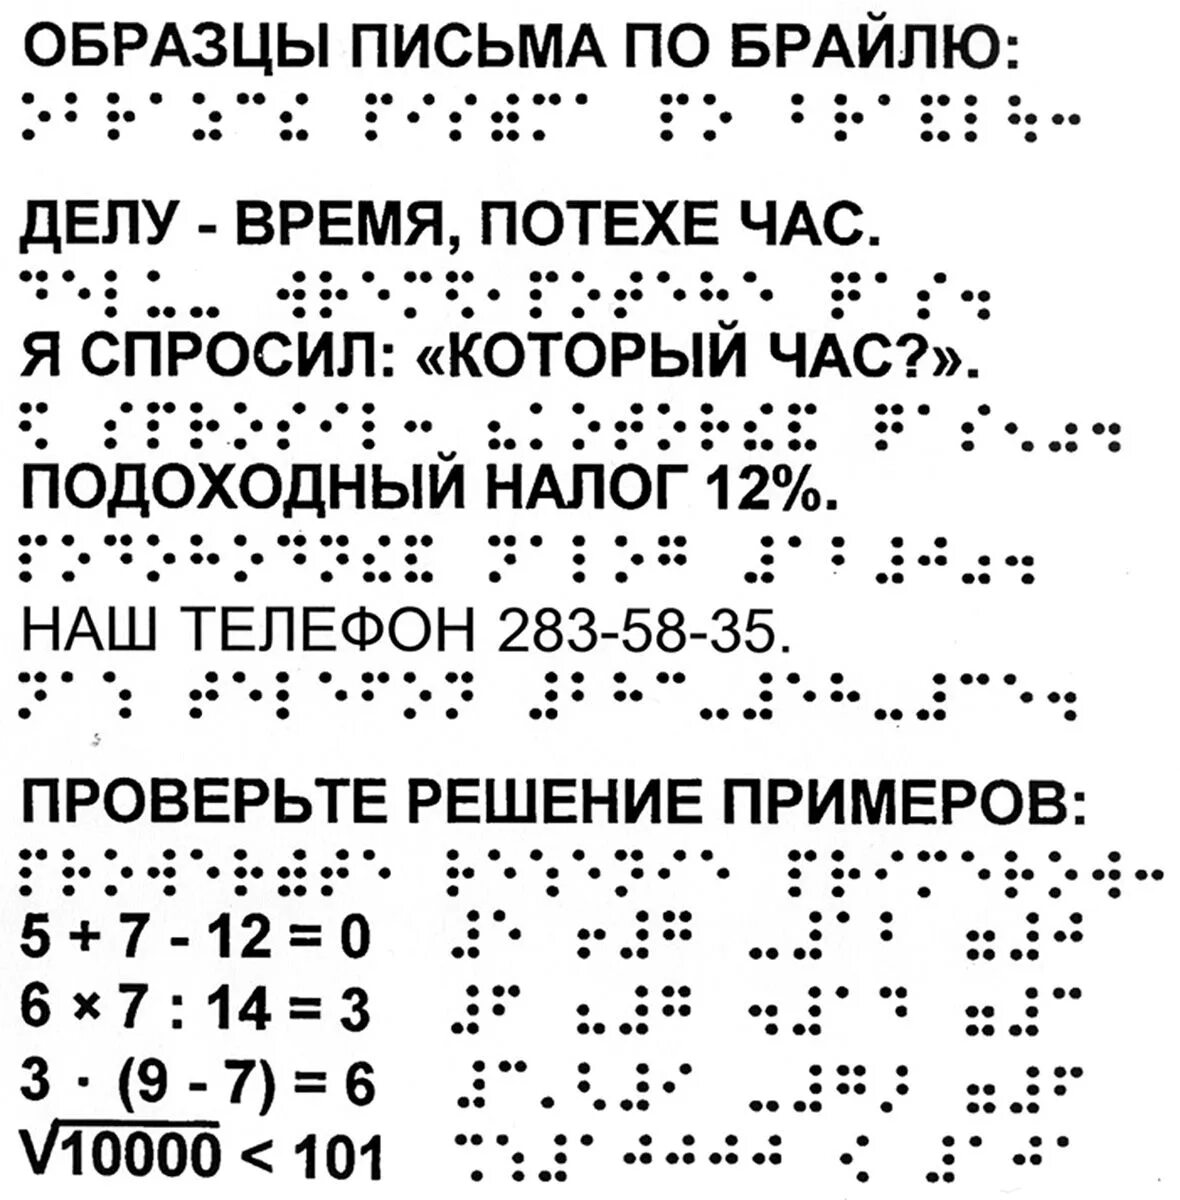 Азбука по системе Брайля. Рельефно-точечный шрифт Брайля. Алфавит Брайля на русском для слепых. Азбука для слепых шрифт Брайля.